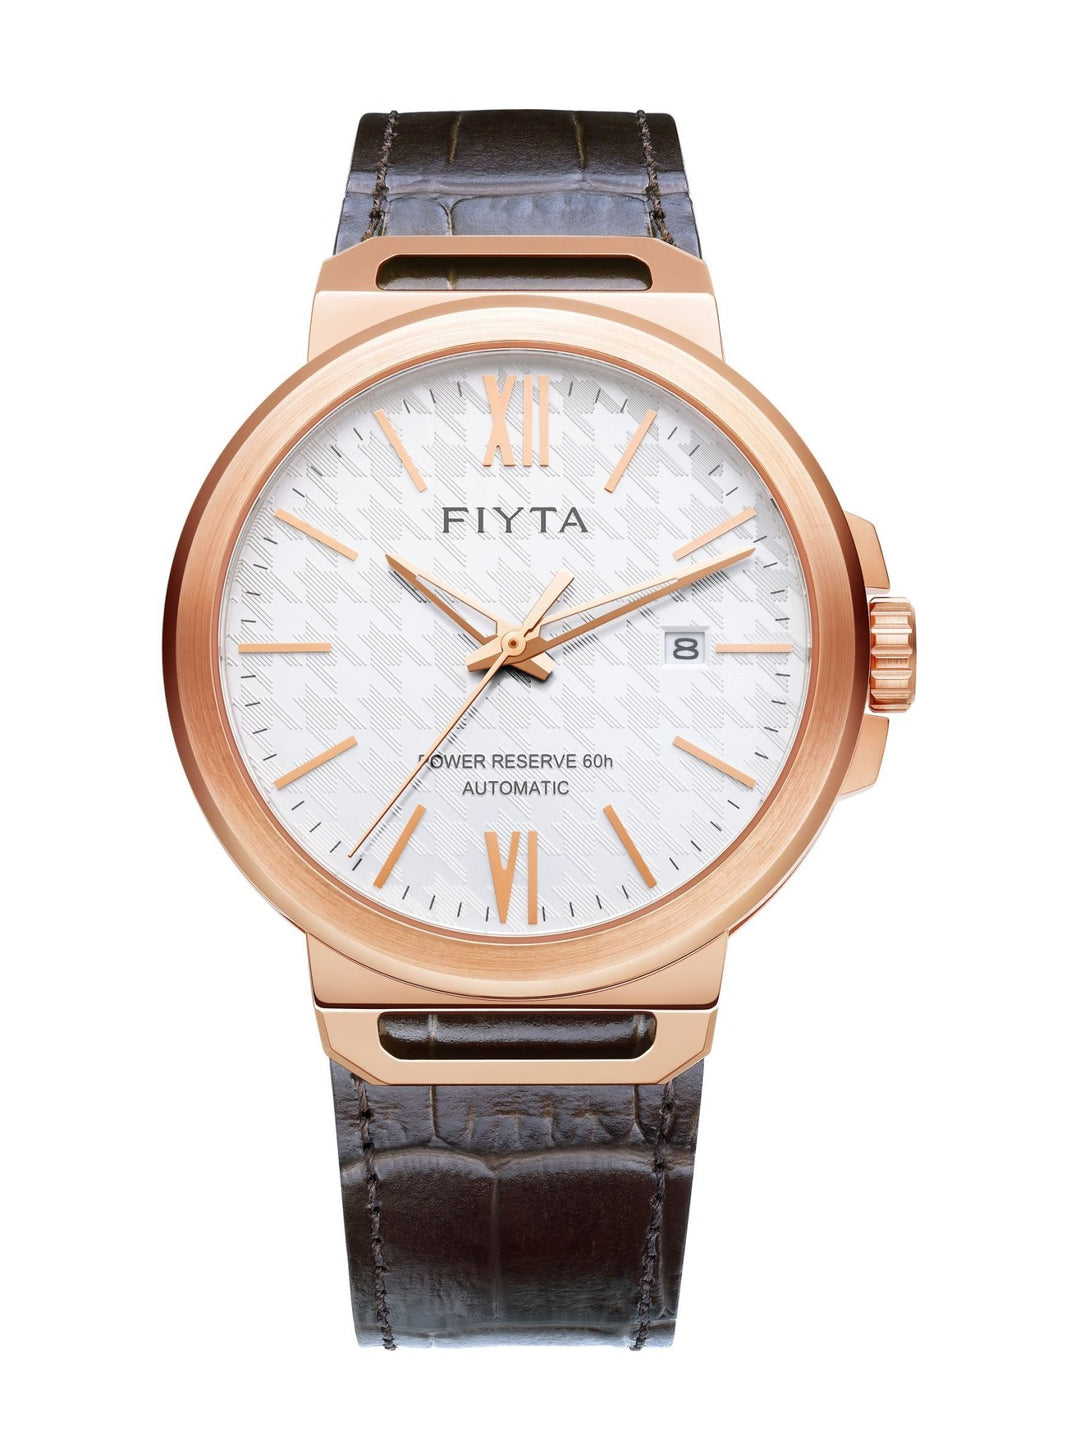 FIYTA Solo Automatic GA852000 - Bartels Watches